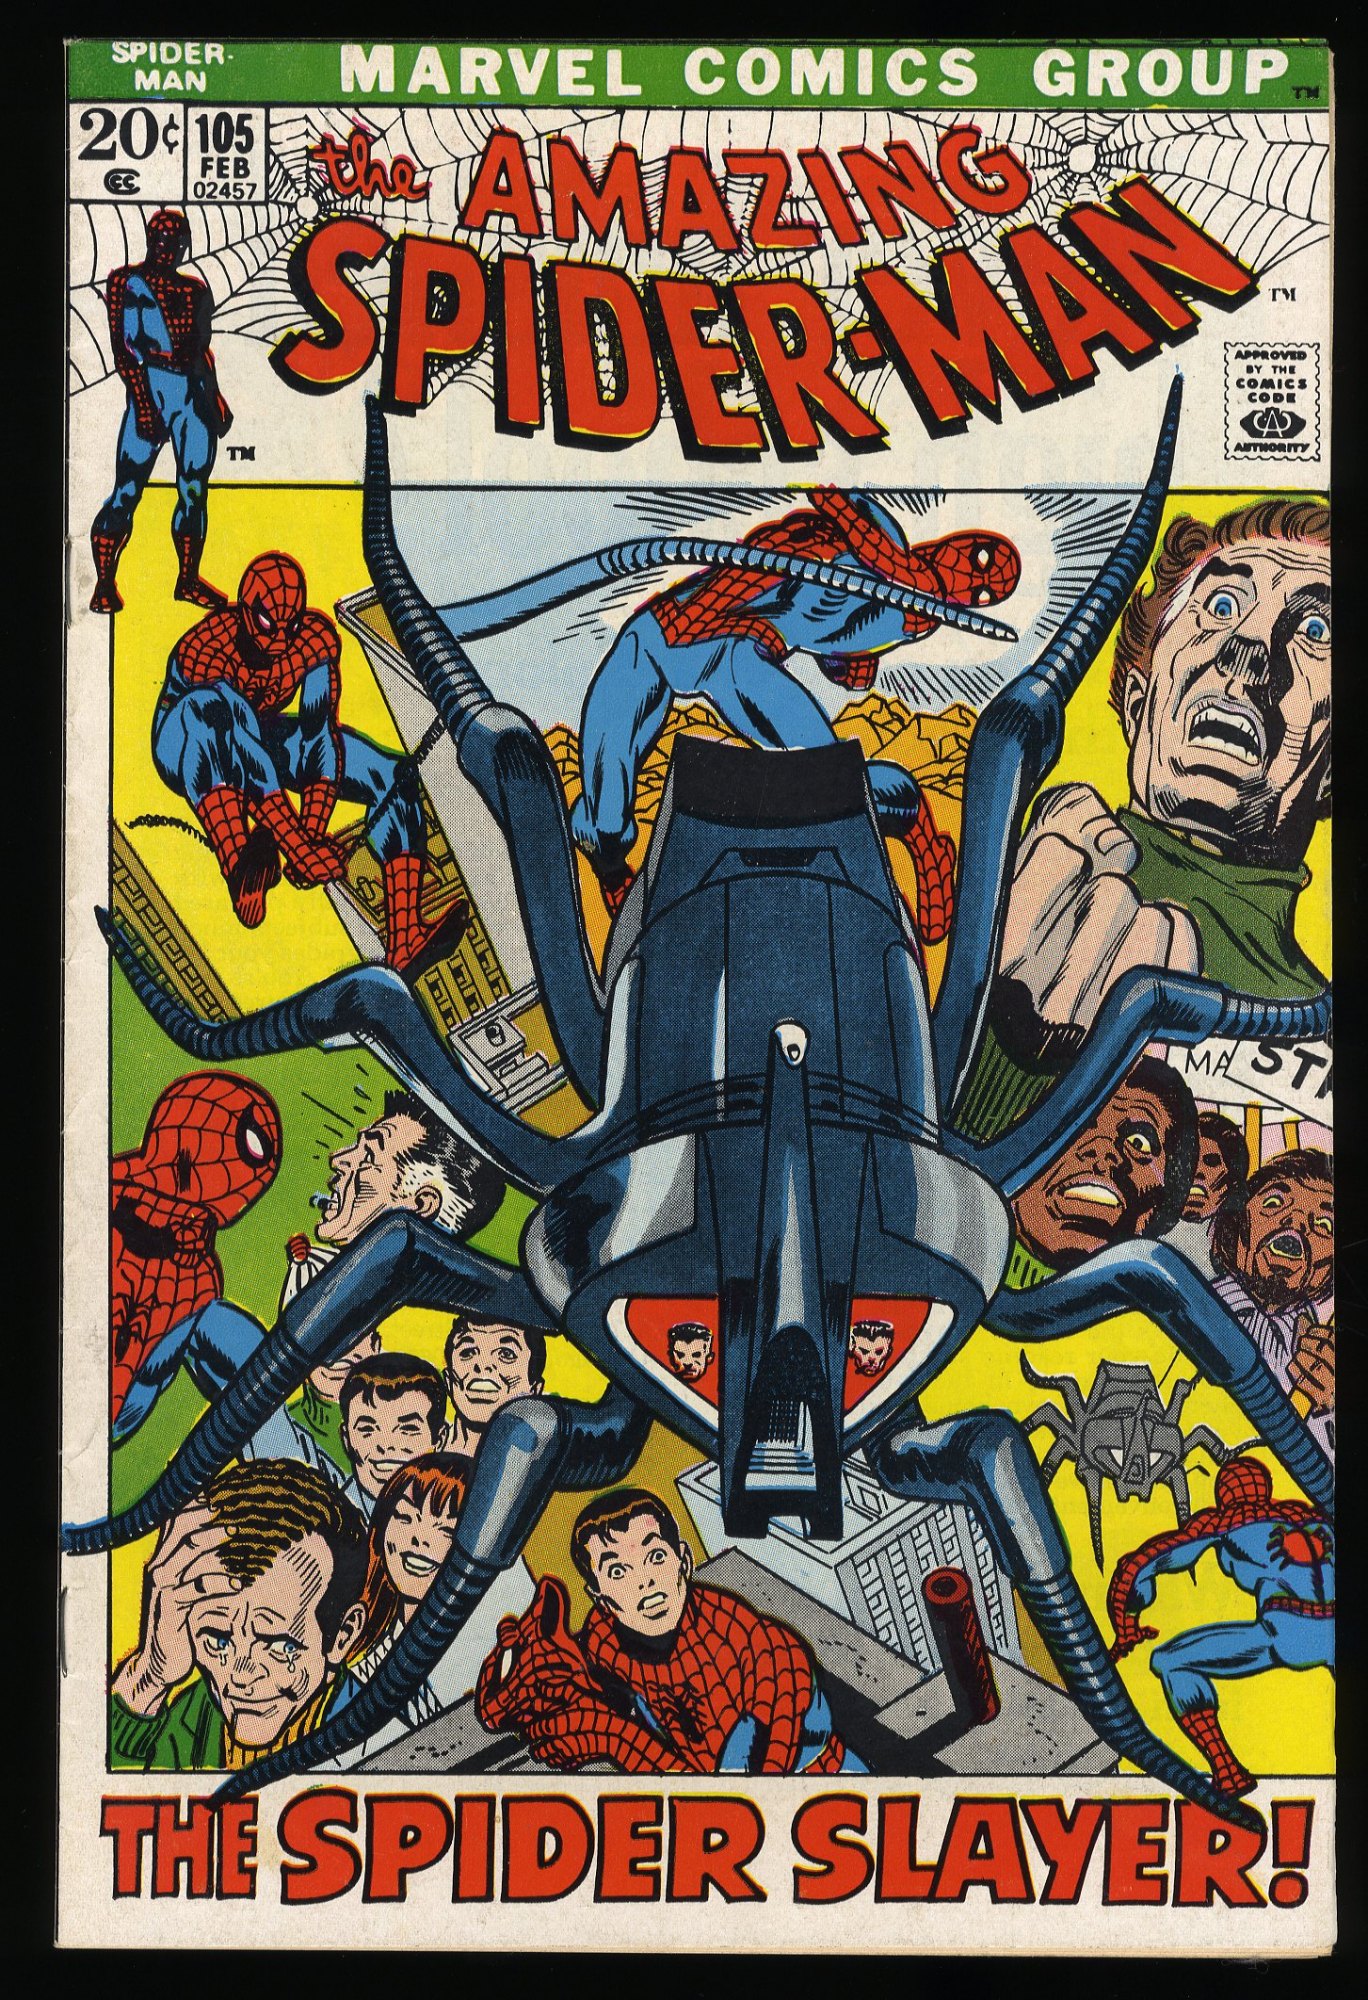 Image: Amazing Spider-Man #105 VF 8.0 Spider Slayer! 1972